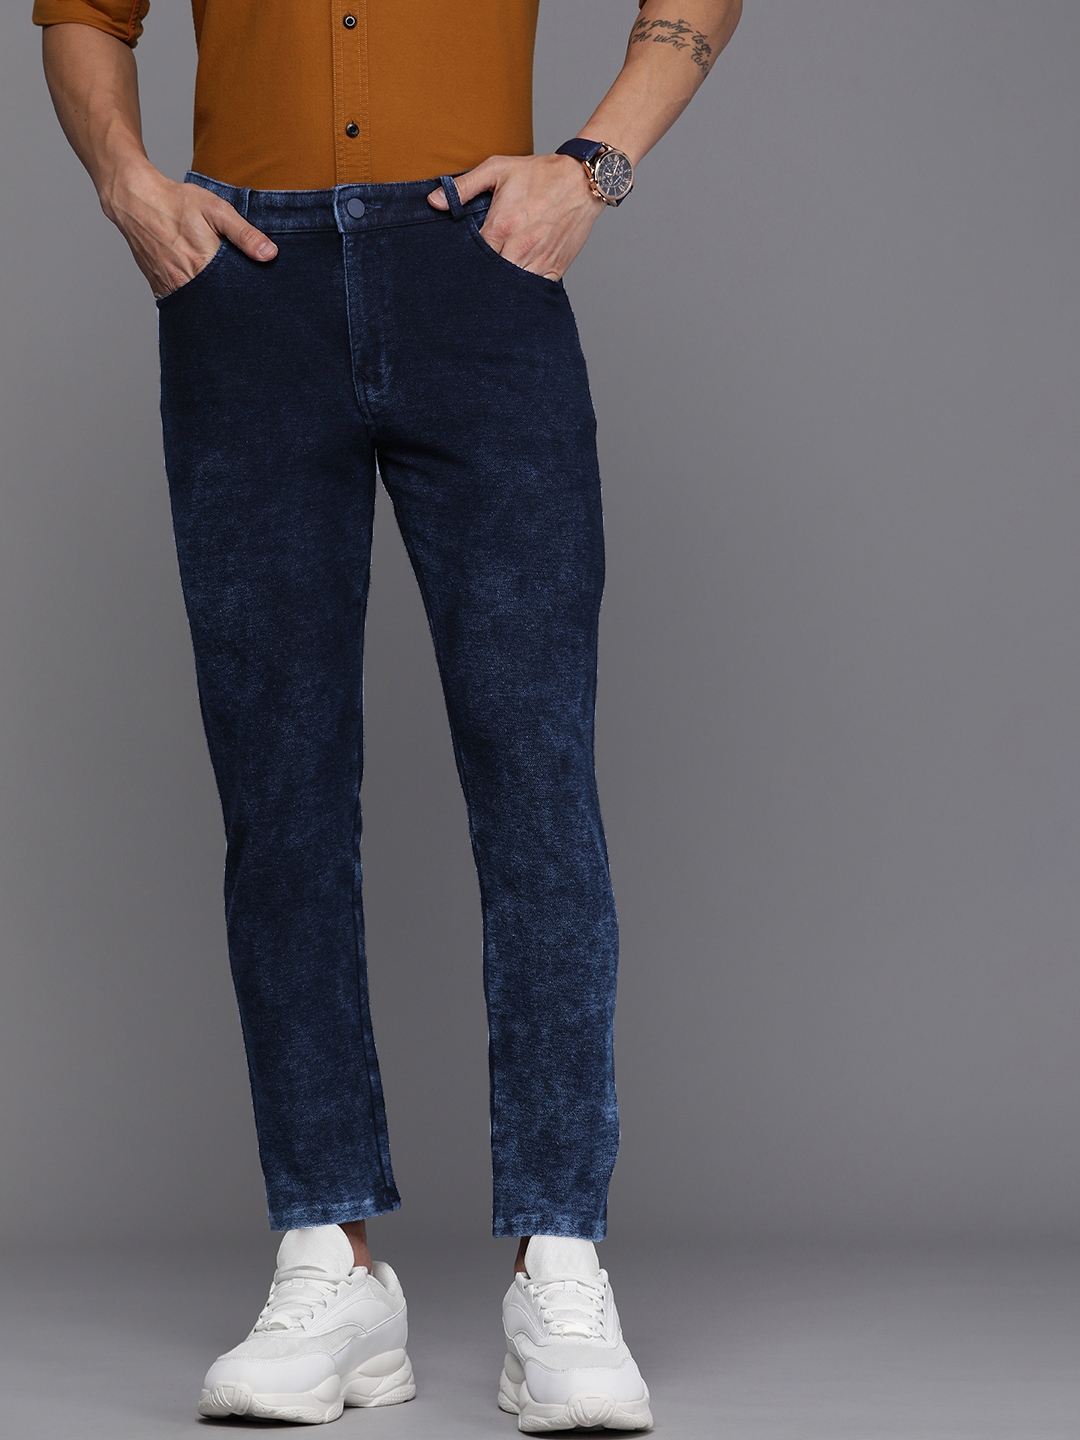 Louis Philippe Jeans Slim Men Light Blue Jeans - Buy Louis